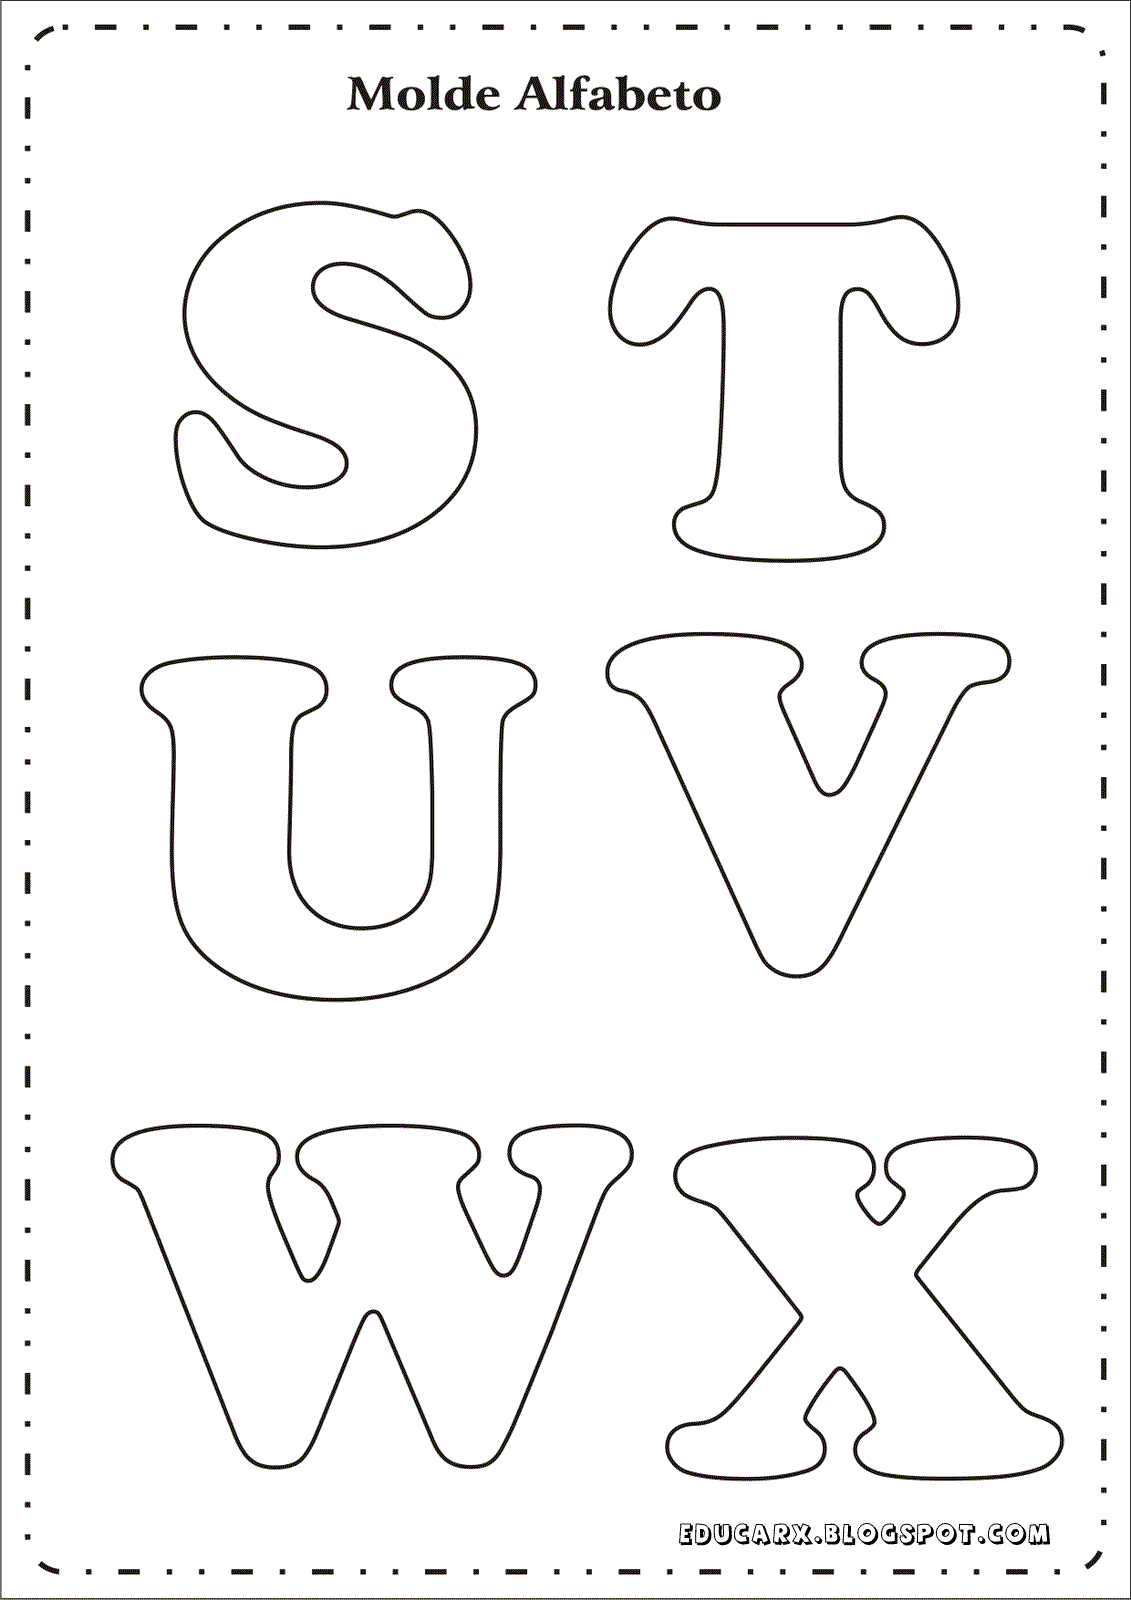 Modelo de letras para cartaz s t u v w x